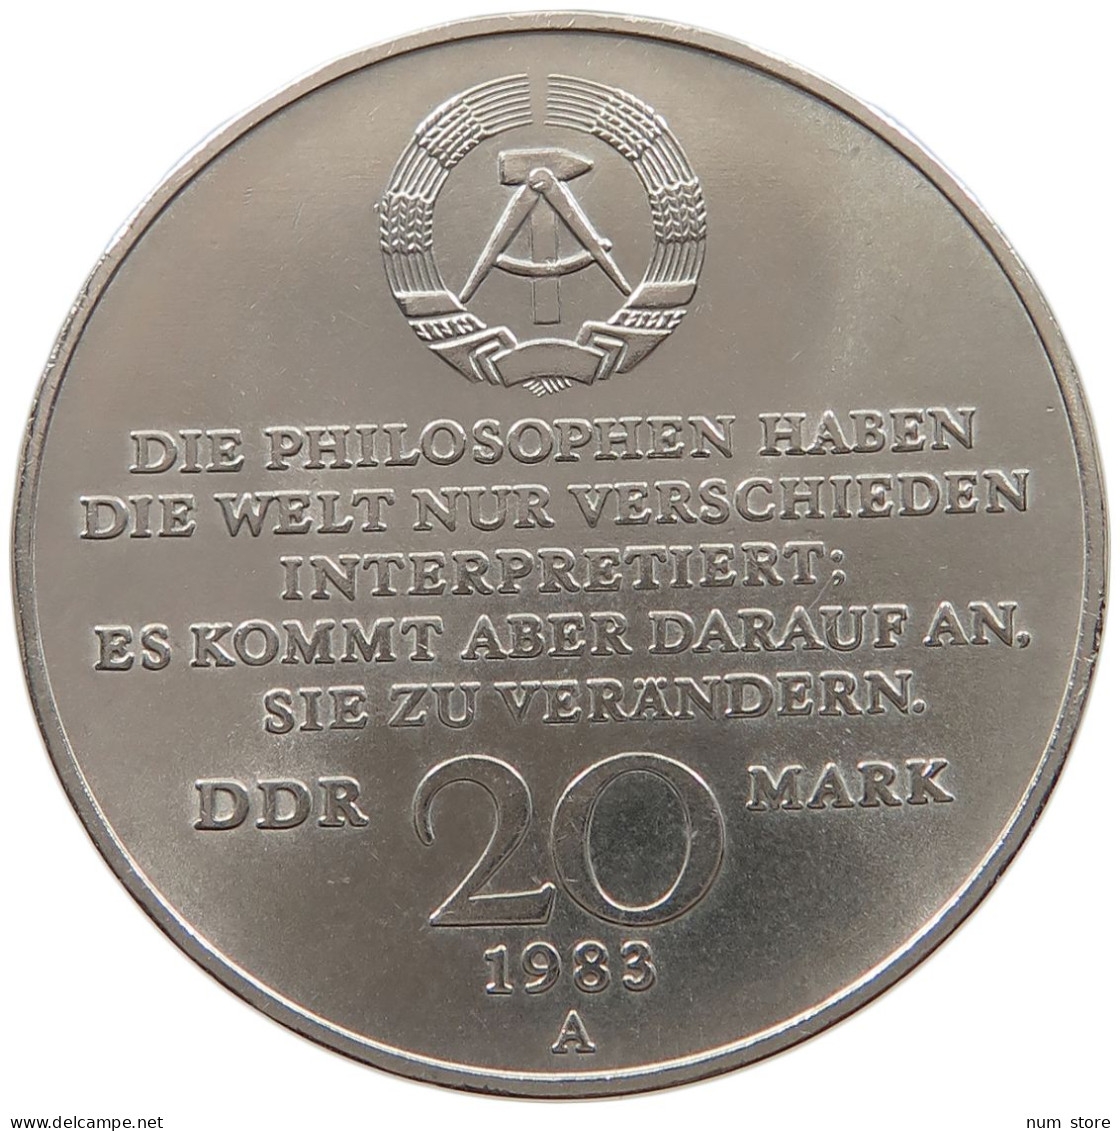 GERMANY DDR 20 MARK 1983 Karl Marx #a060 0537 - 20 Mark